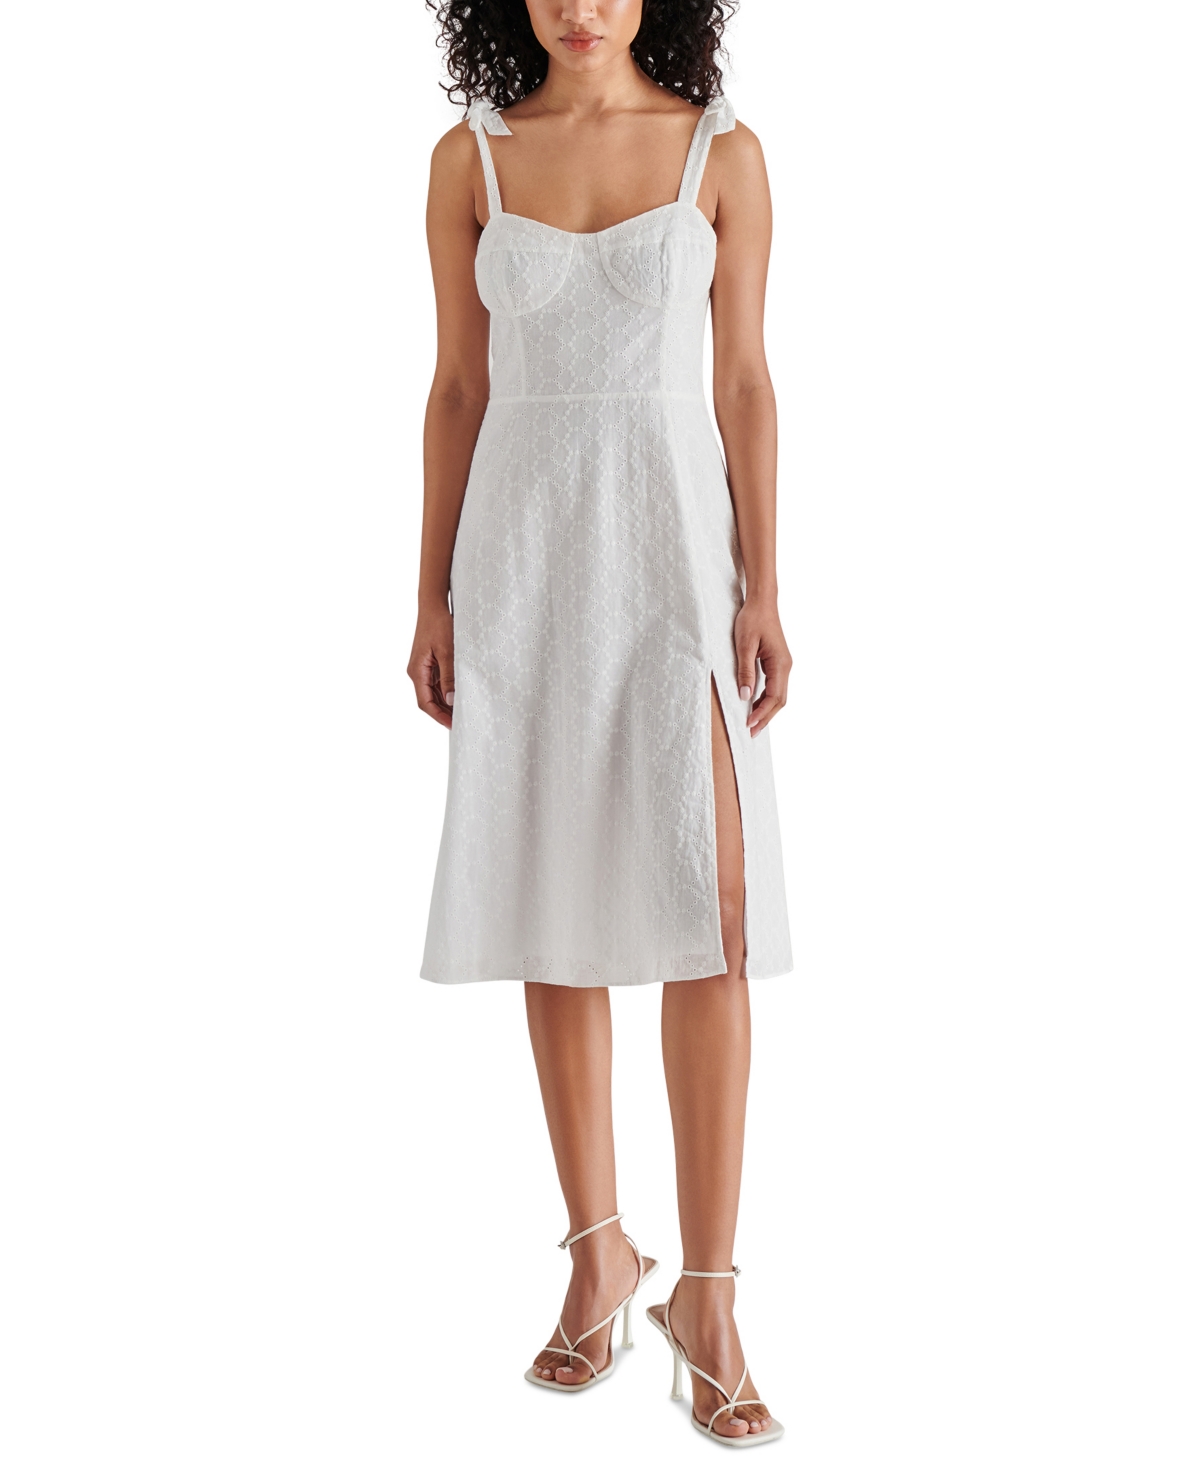 Women's Carlynn Cotton Eyelet Dress - White